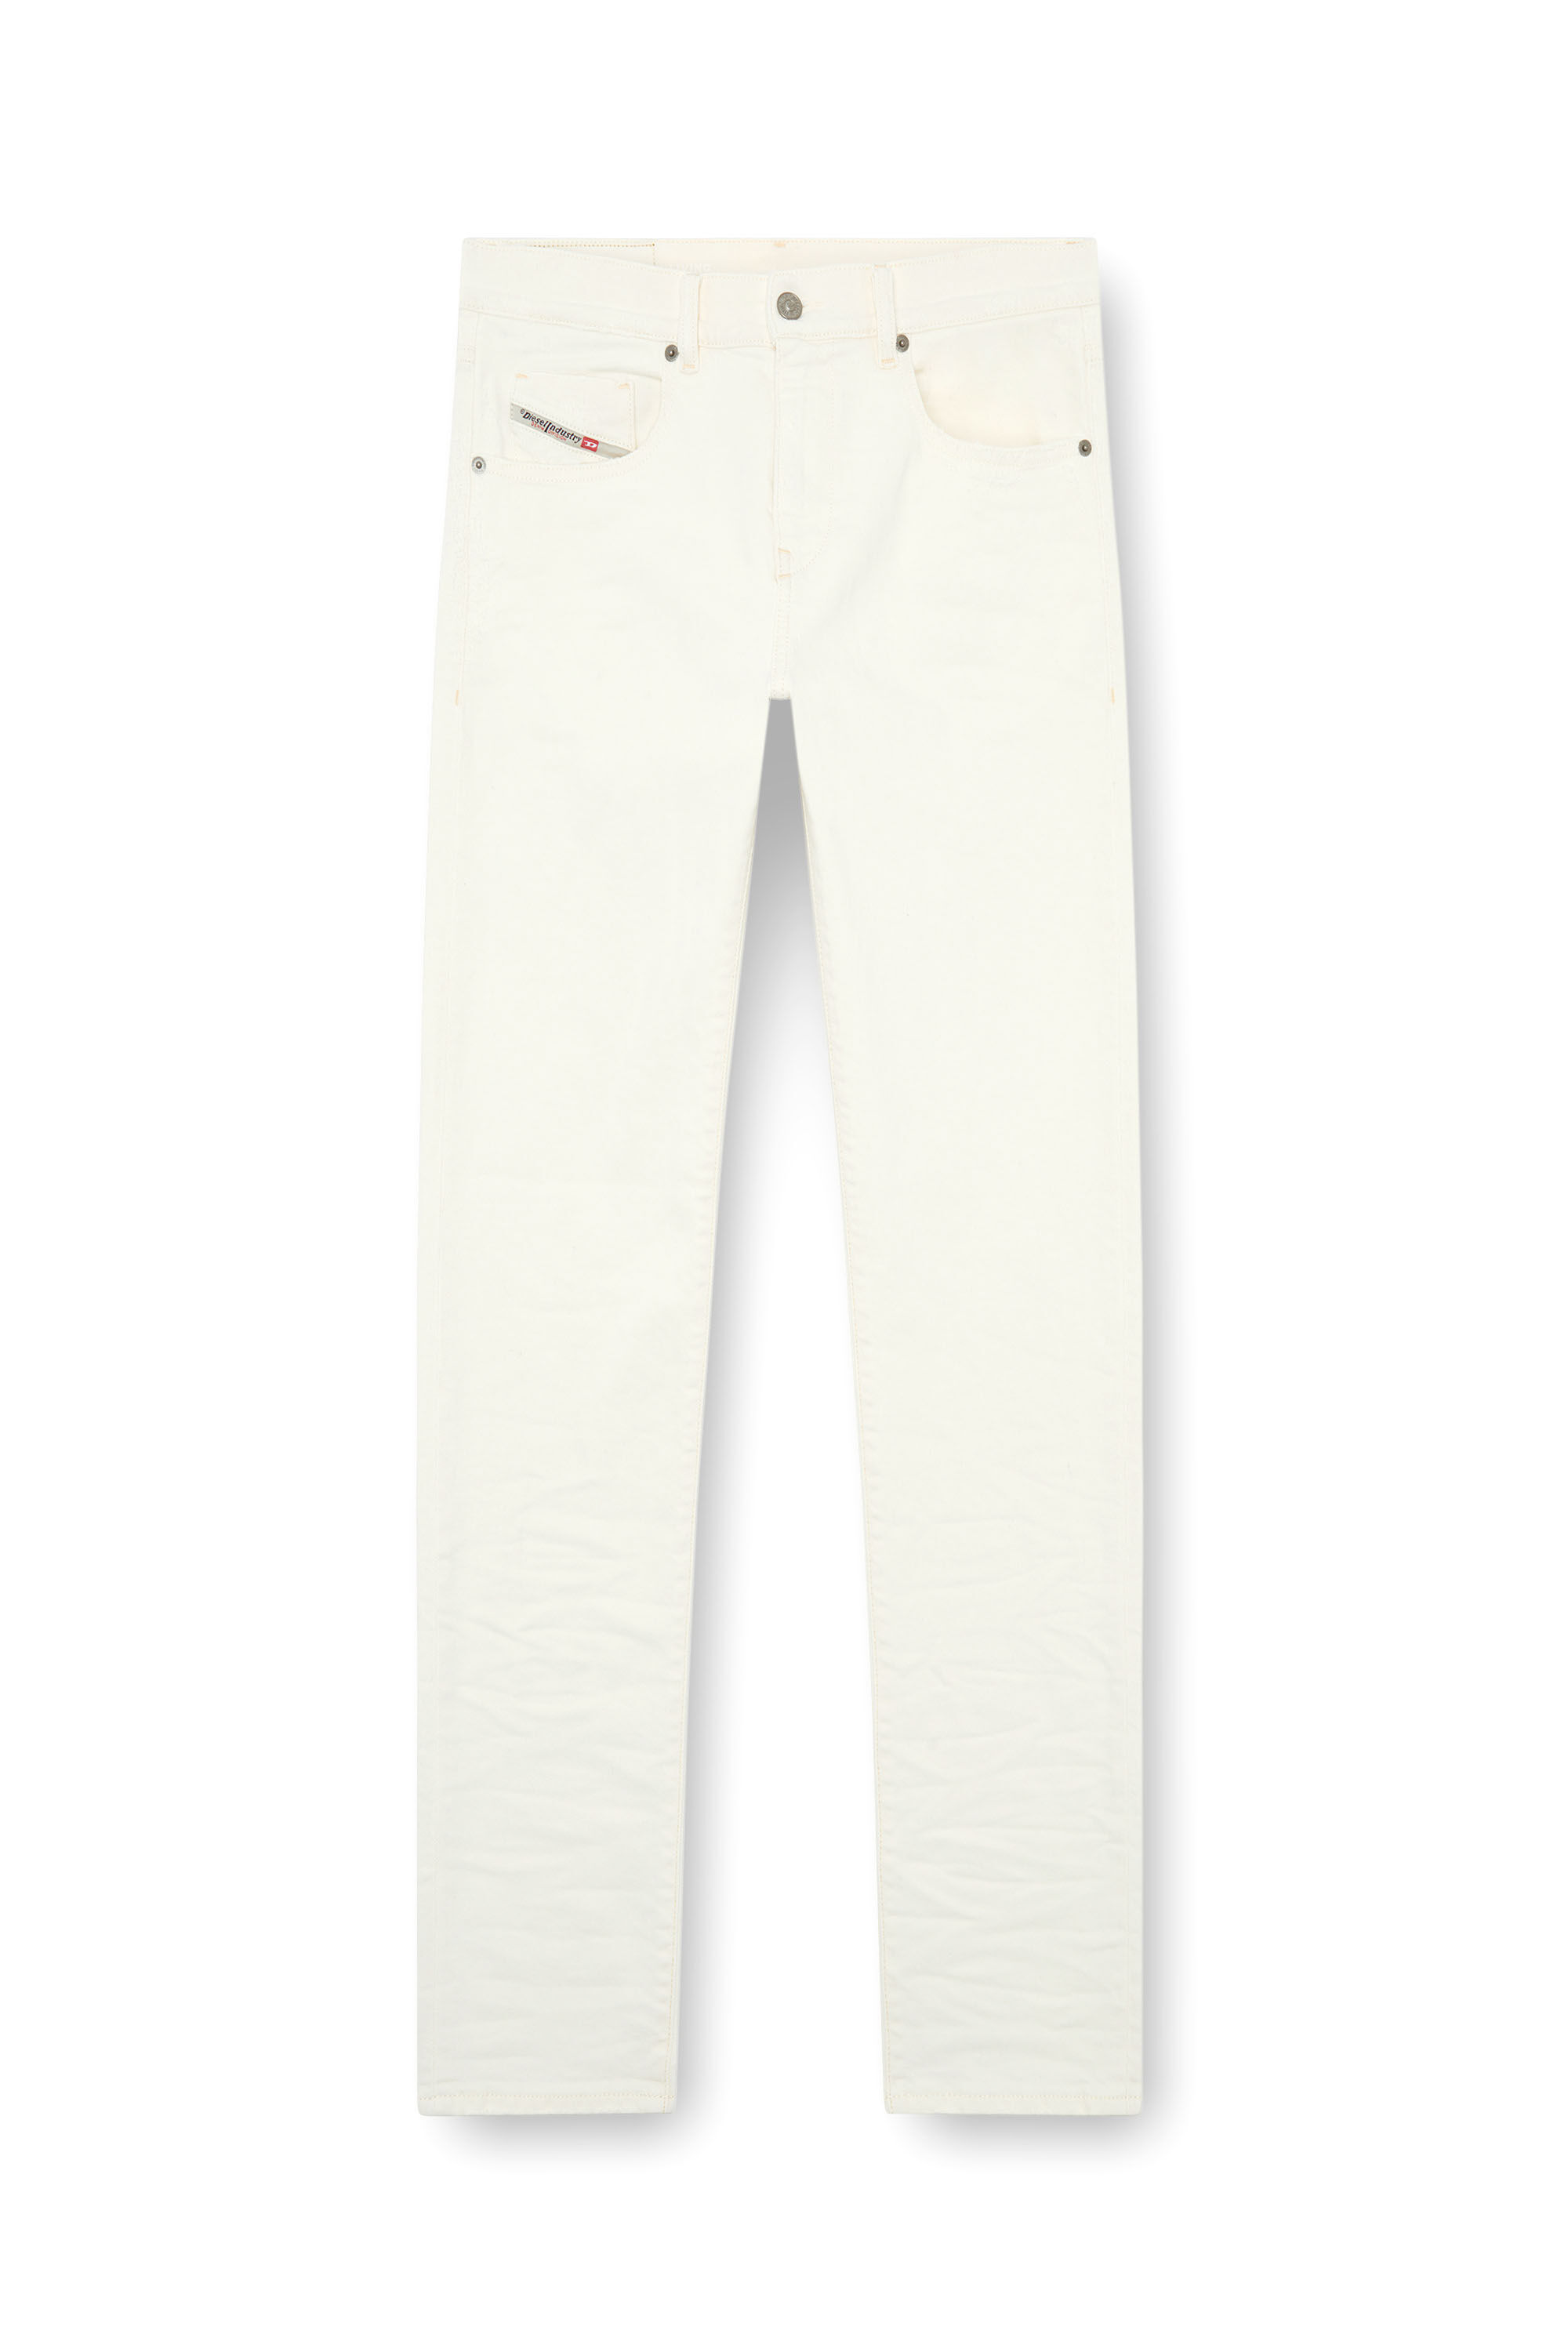 Diesel - Slim Jeans 2019 D-Strukt 09I15, Hombre Slim Jeans - 2019 D-Strukt in Blanco - Image 2